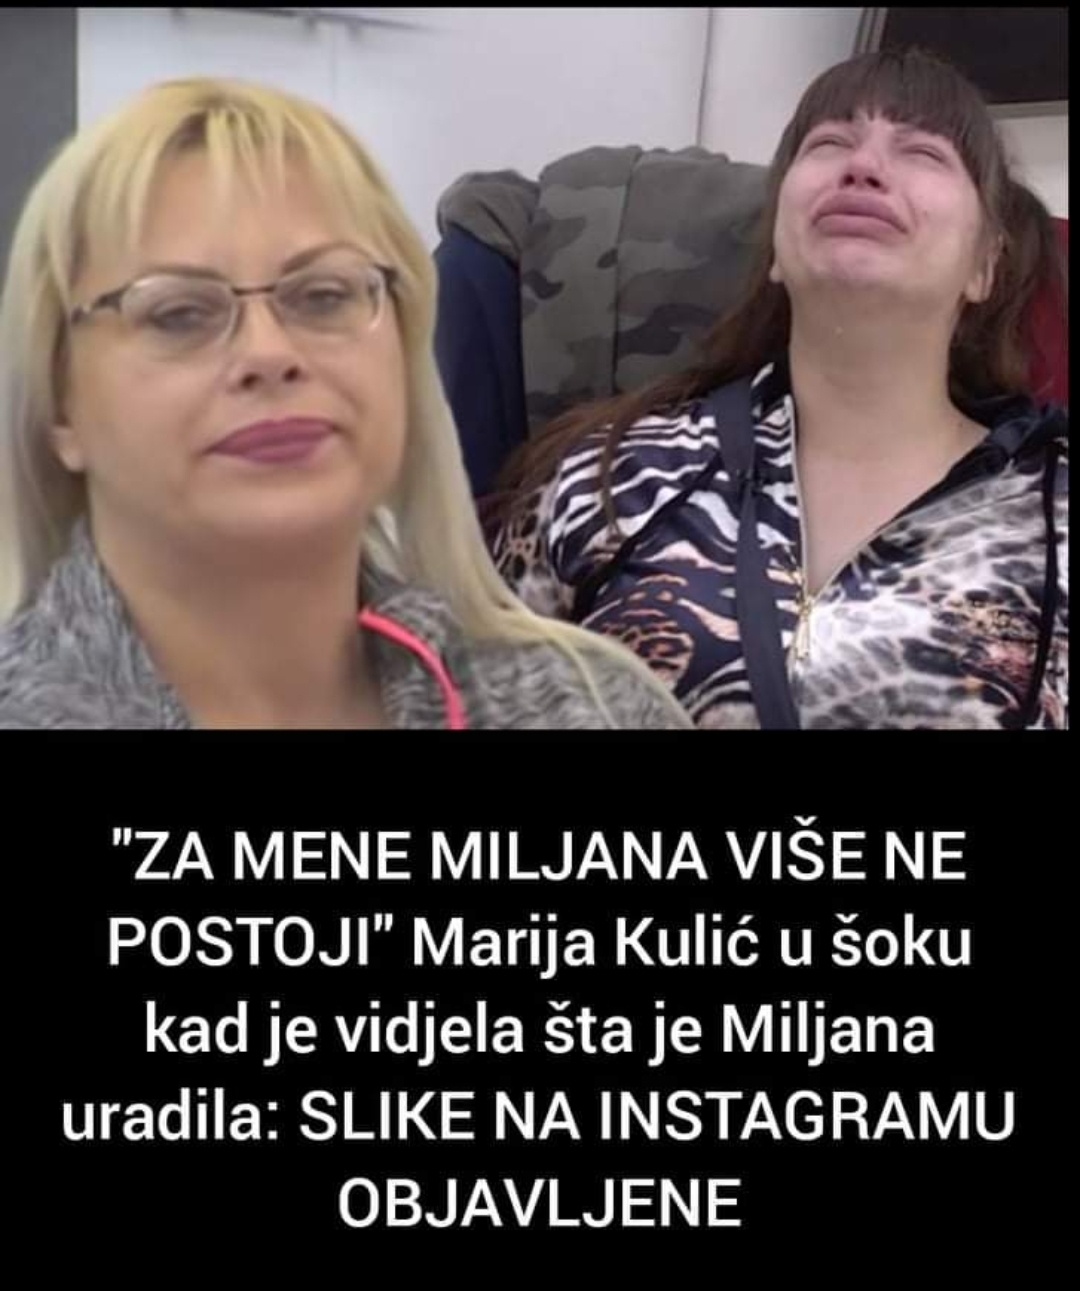 Pogledajte zašto je Marija Kulić bijesna na Miljanu